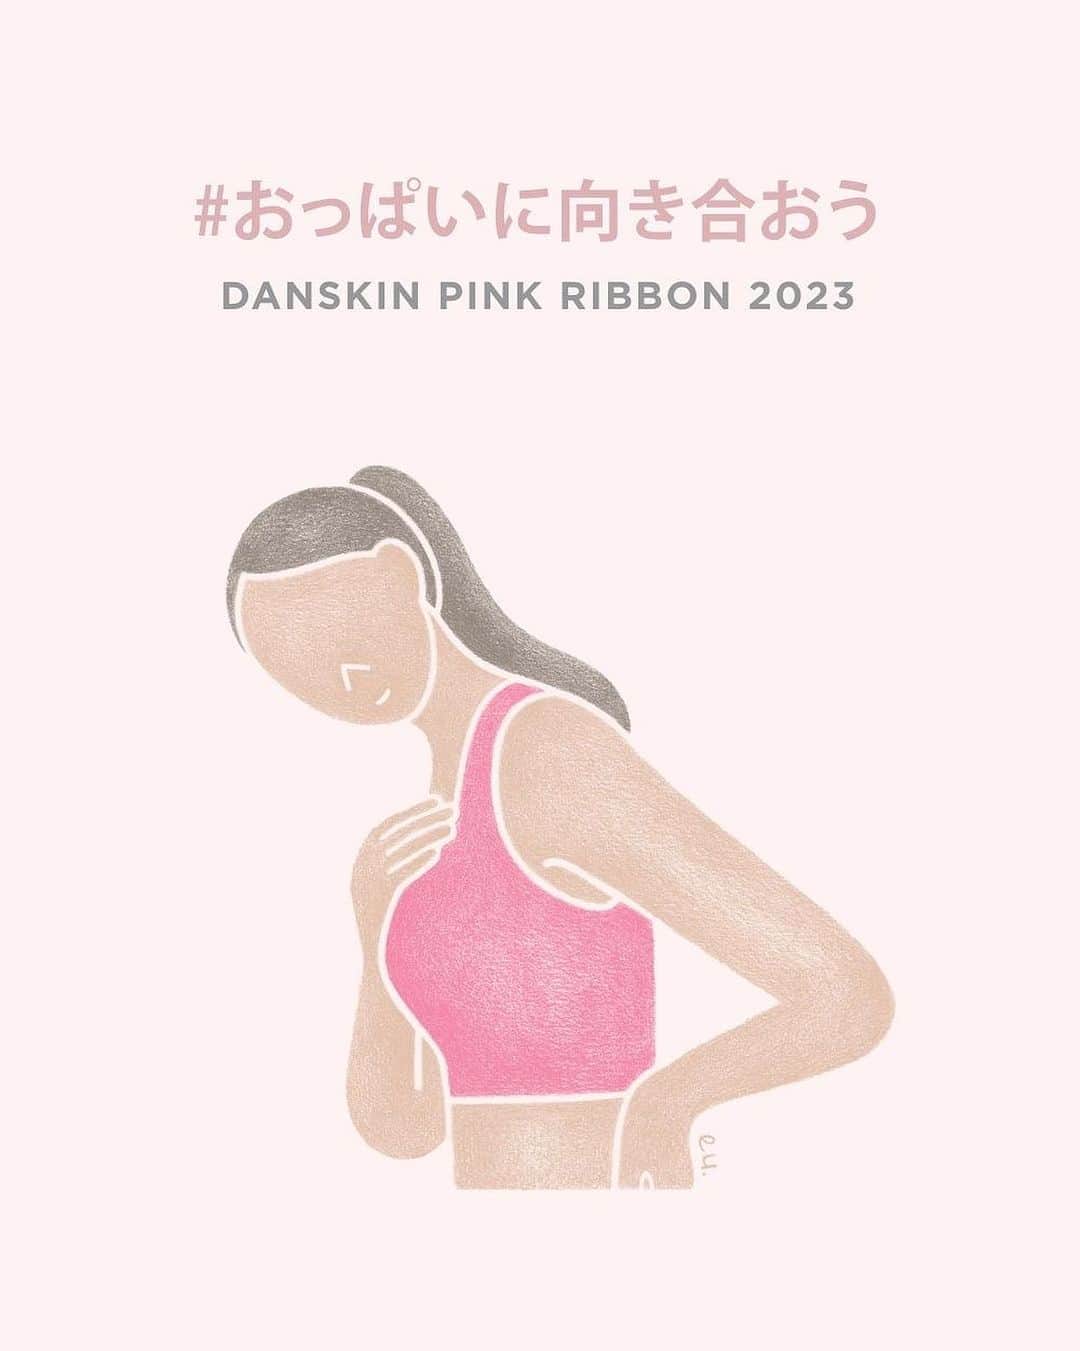 DANSKIN Japanのインスタグラム：「【PINK RIBBON】全ての女性の健康的で前向きな笑顔を支える存在でありたい  どんなときも、それぞれの「今」を生きる女性たちの伴走者であることを目指すダンスキンは、乳がんの正しい知識を広め、早期検診を推進する世界的な「ピンクリボン」活動に継続的に参加しています。  今年もまた、ダンスキンのブランドアンバサダーでヨガインストラクター、ピンクリボンアドバイザーでもある木田まみさんとともに、お客さまはもちろんその家族、大切な人たちにとって「役に立つ」コンテンツの発信やチャリティ活動を通じて、乳がんにやさしい社会の実現を目指します。  「スポーツを通じて自分のこころとからだを大切に思い、病気や検査を必要以上に怖がらない気持ちを育てる」ために。  ──── 本日、ダンスキンブランドサイトにてピンクリボン特集を公開しました。 プロフィールTOPのURLよりぜひご覧ください。  #danskin #danskinjapan #ダンスキン #こころとからだ #わたしを生きる #おっぱいに向き合おう #ピンクリボン #ピンクリボン2023」